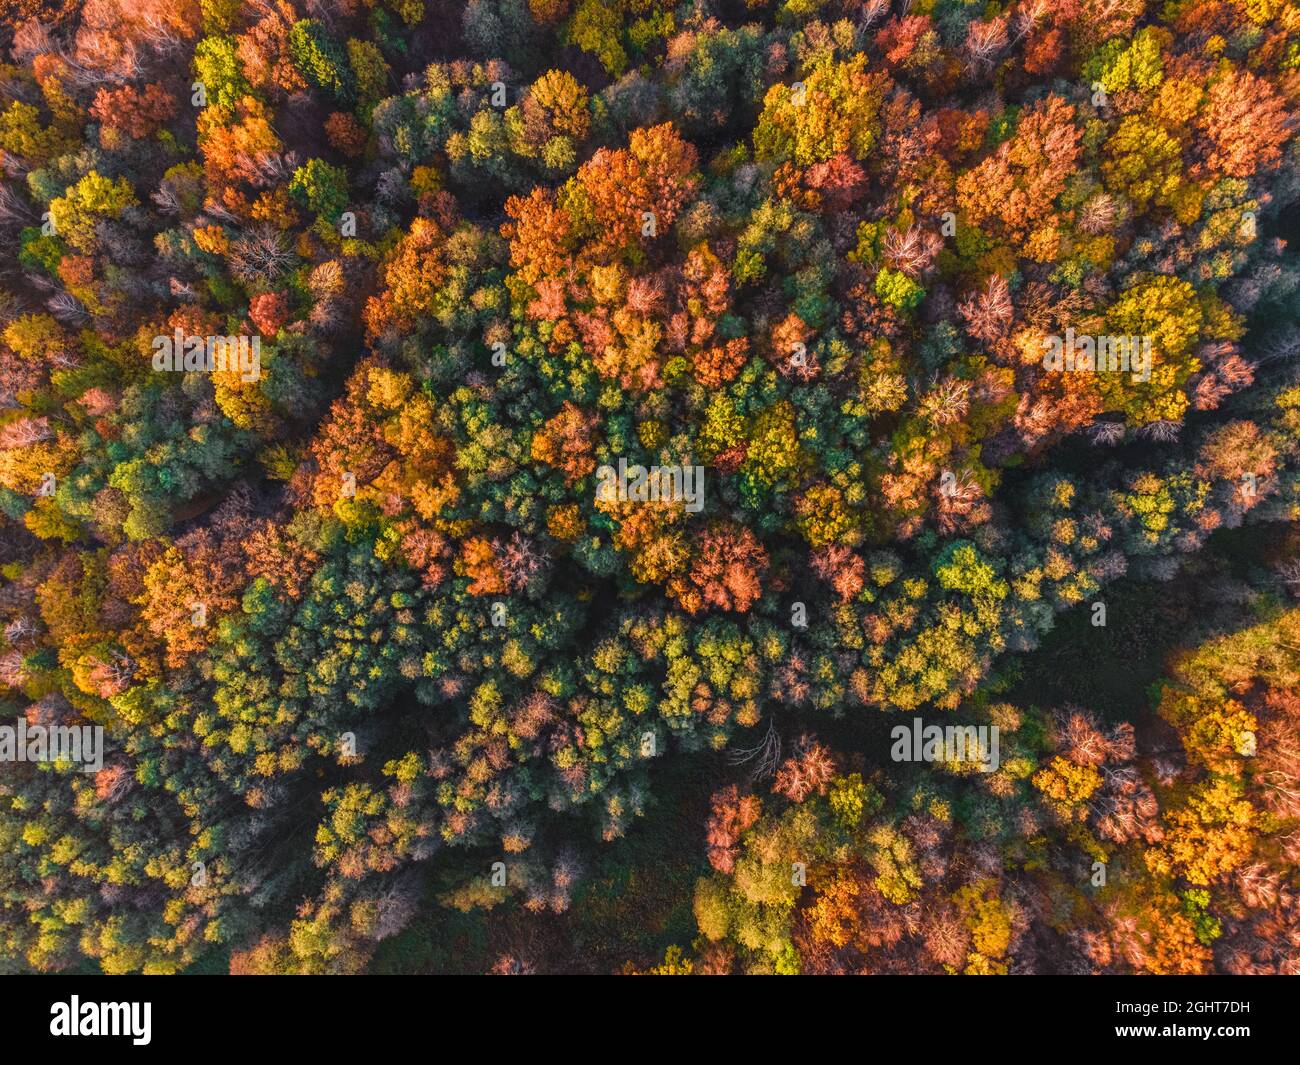 Veduta aerea della foresta autunnale. Bellissimo paesaggio con alberi con foglie verdi, rosse e arancioni. Vista dall'alto dal drone Foto Stock